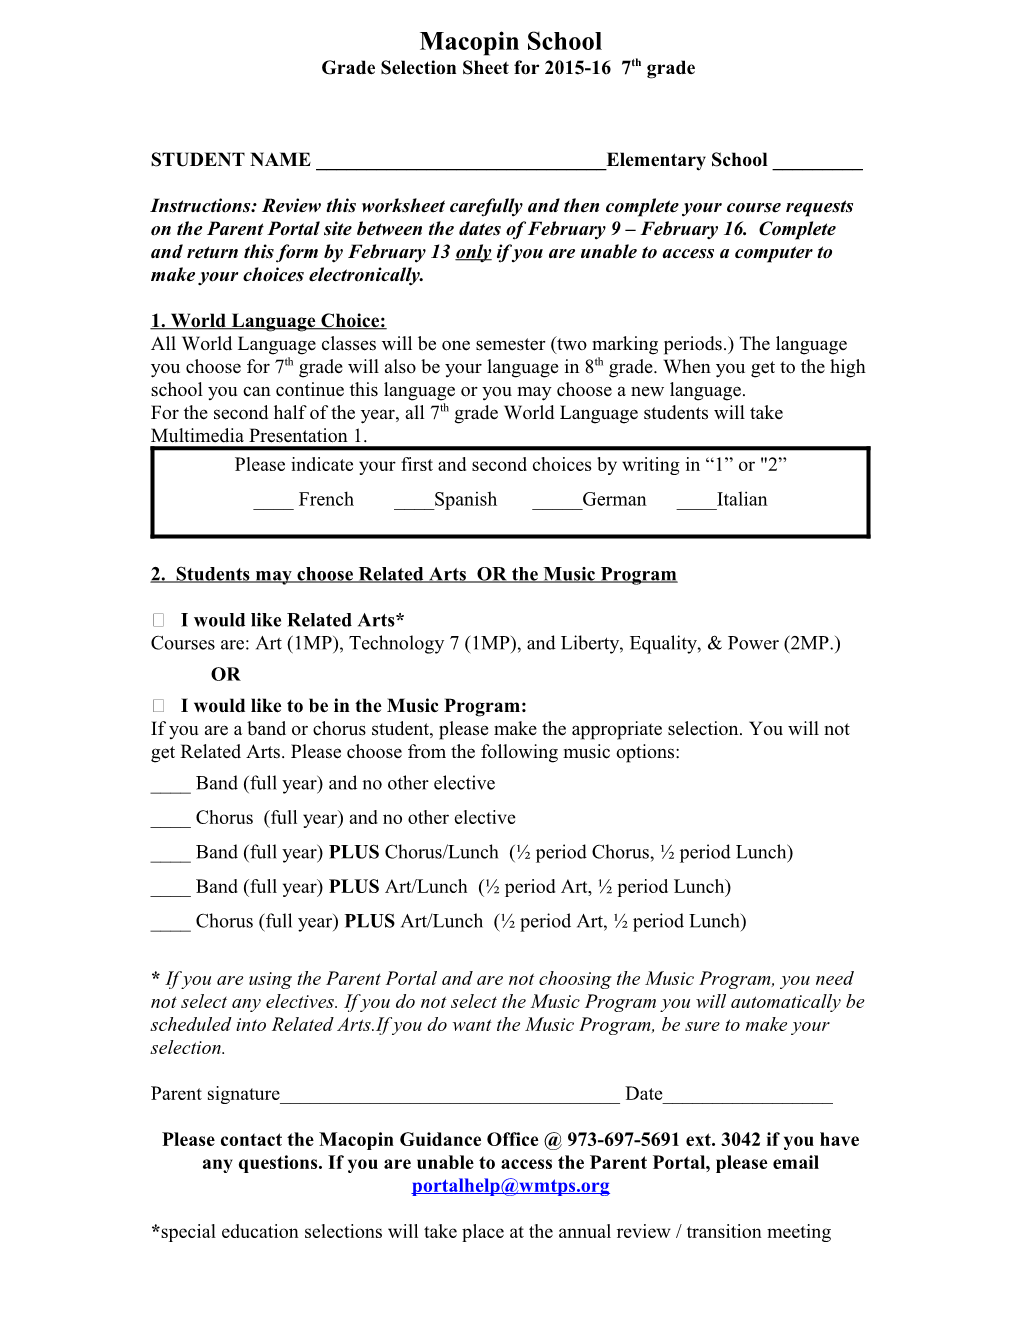 Grade Selection Sheet for 2015-16 7Th Grade